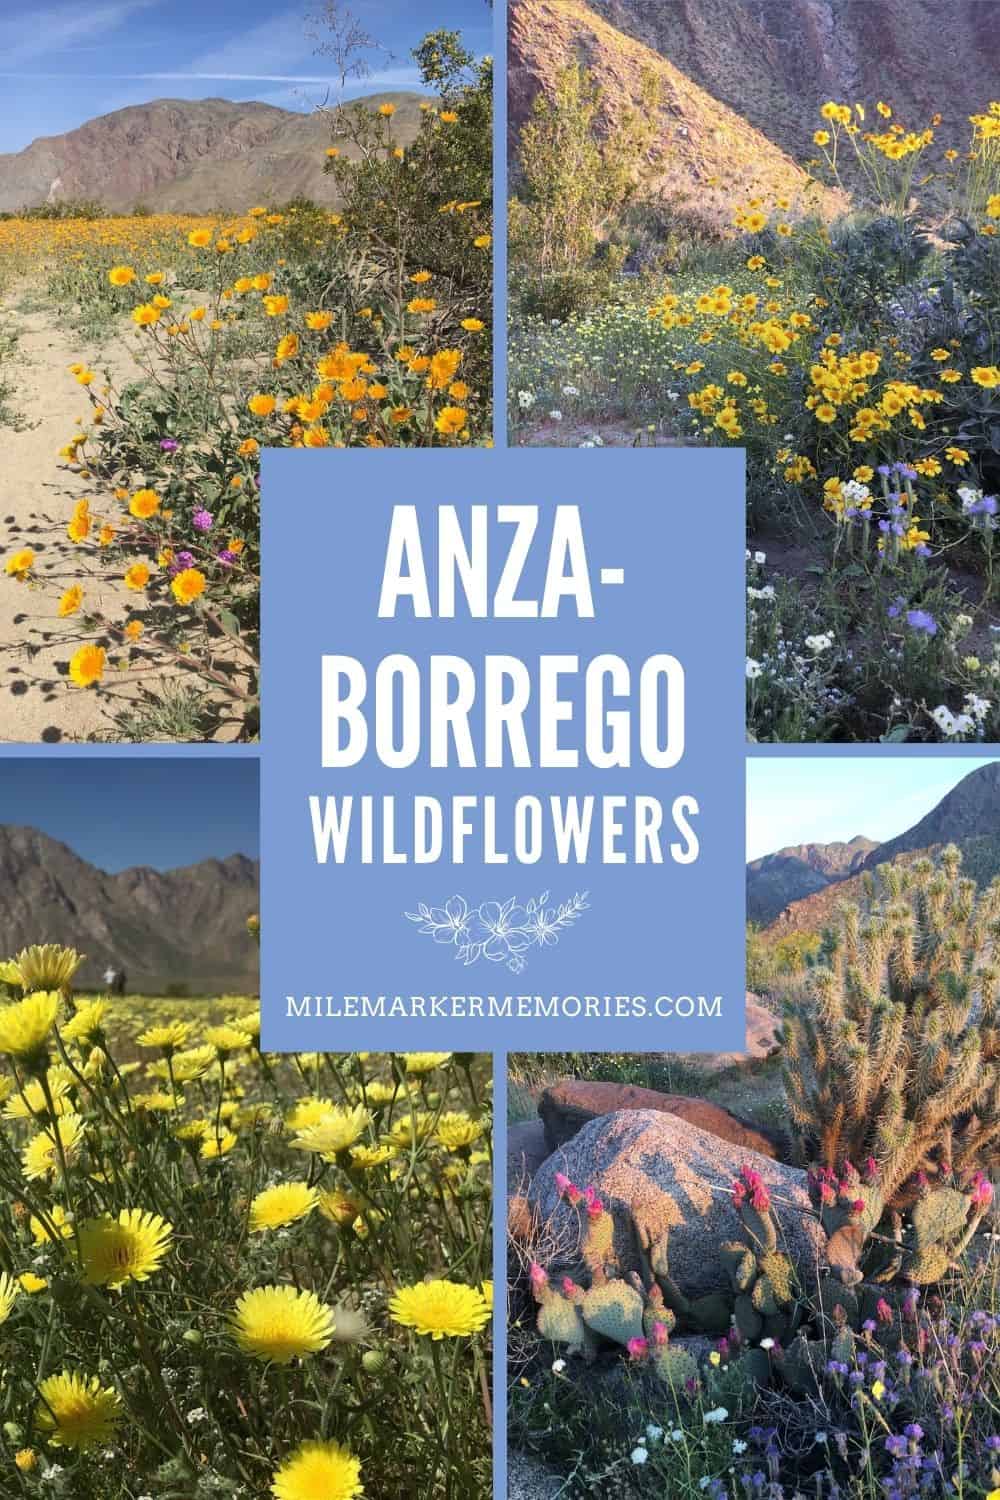 ANZA-BORREGO WILDFLOWERS